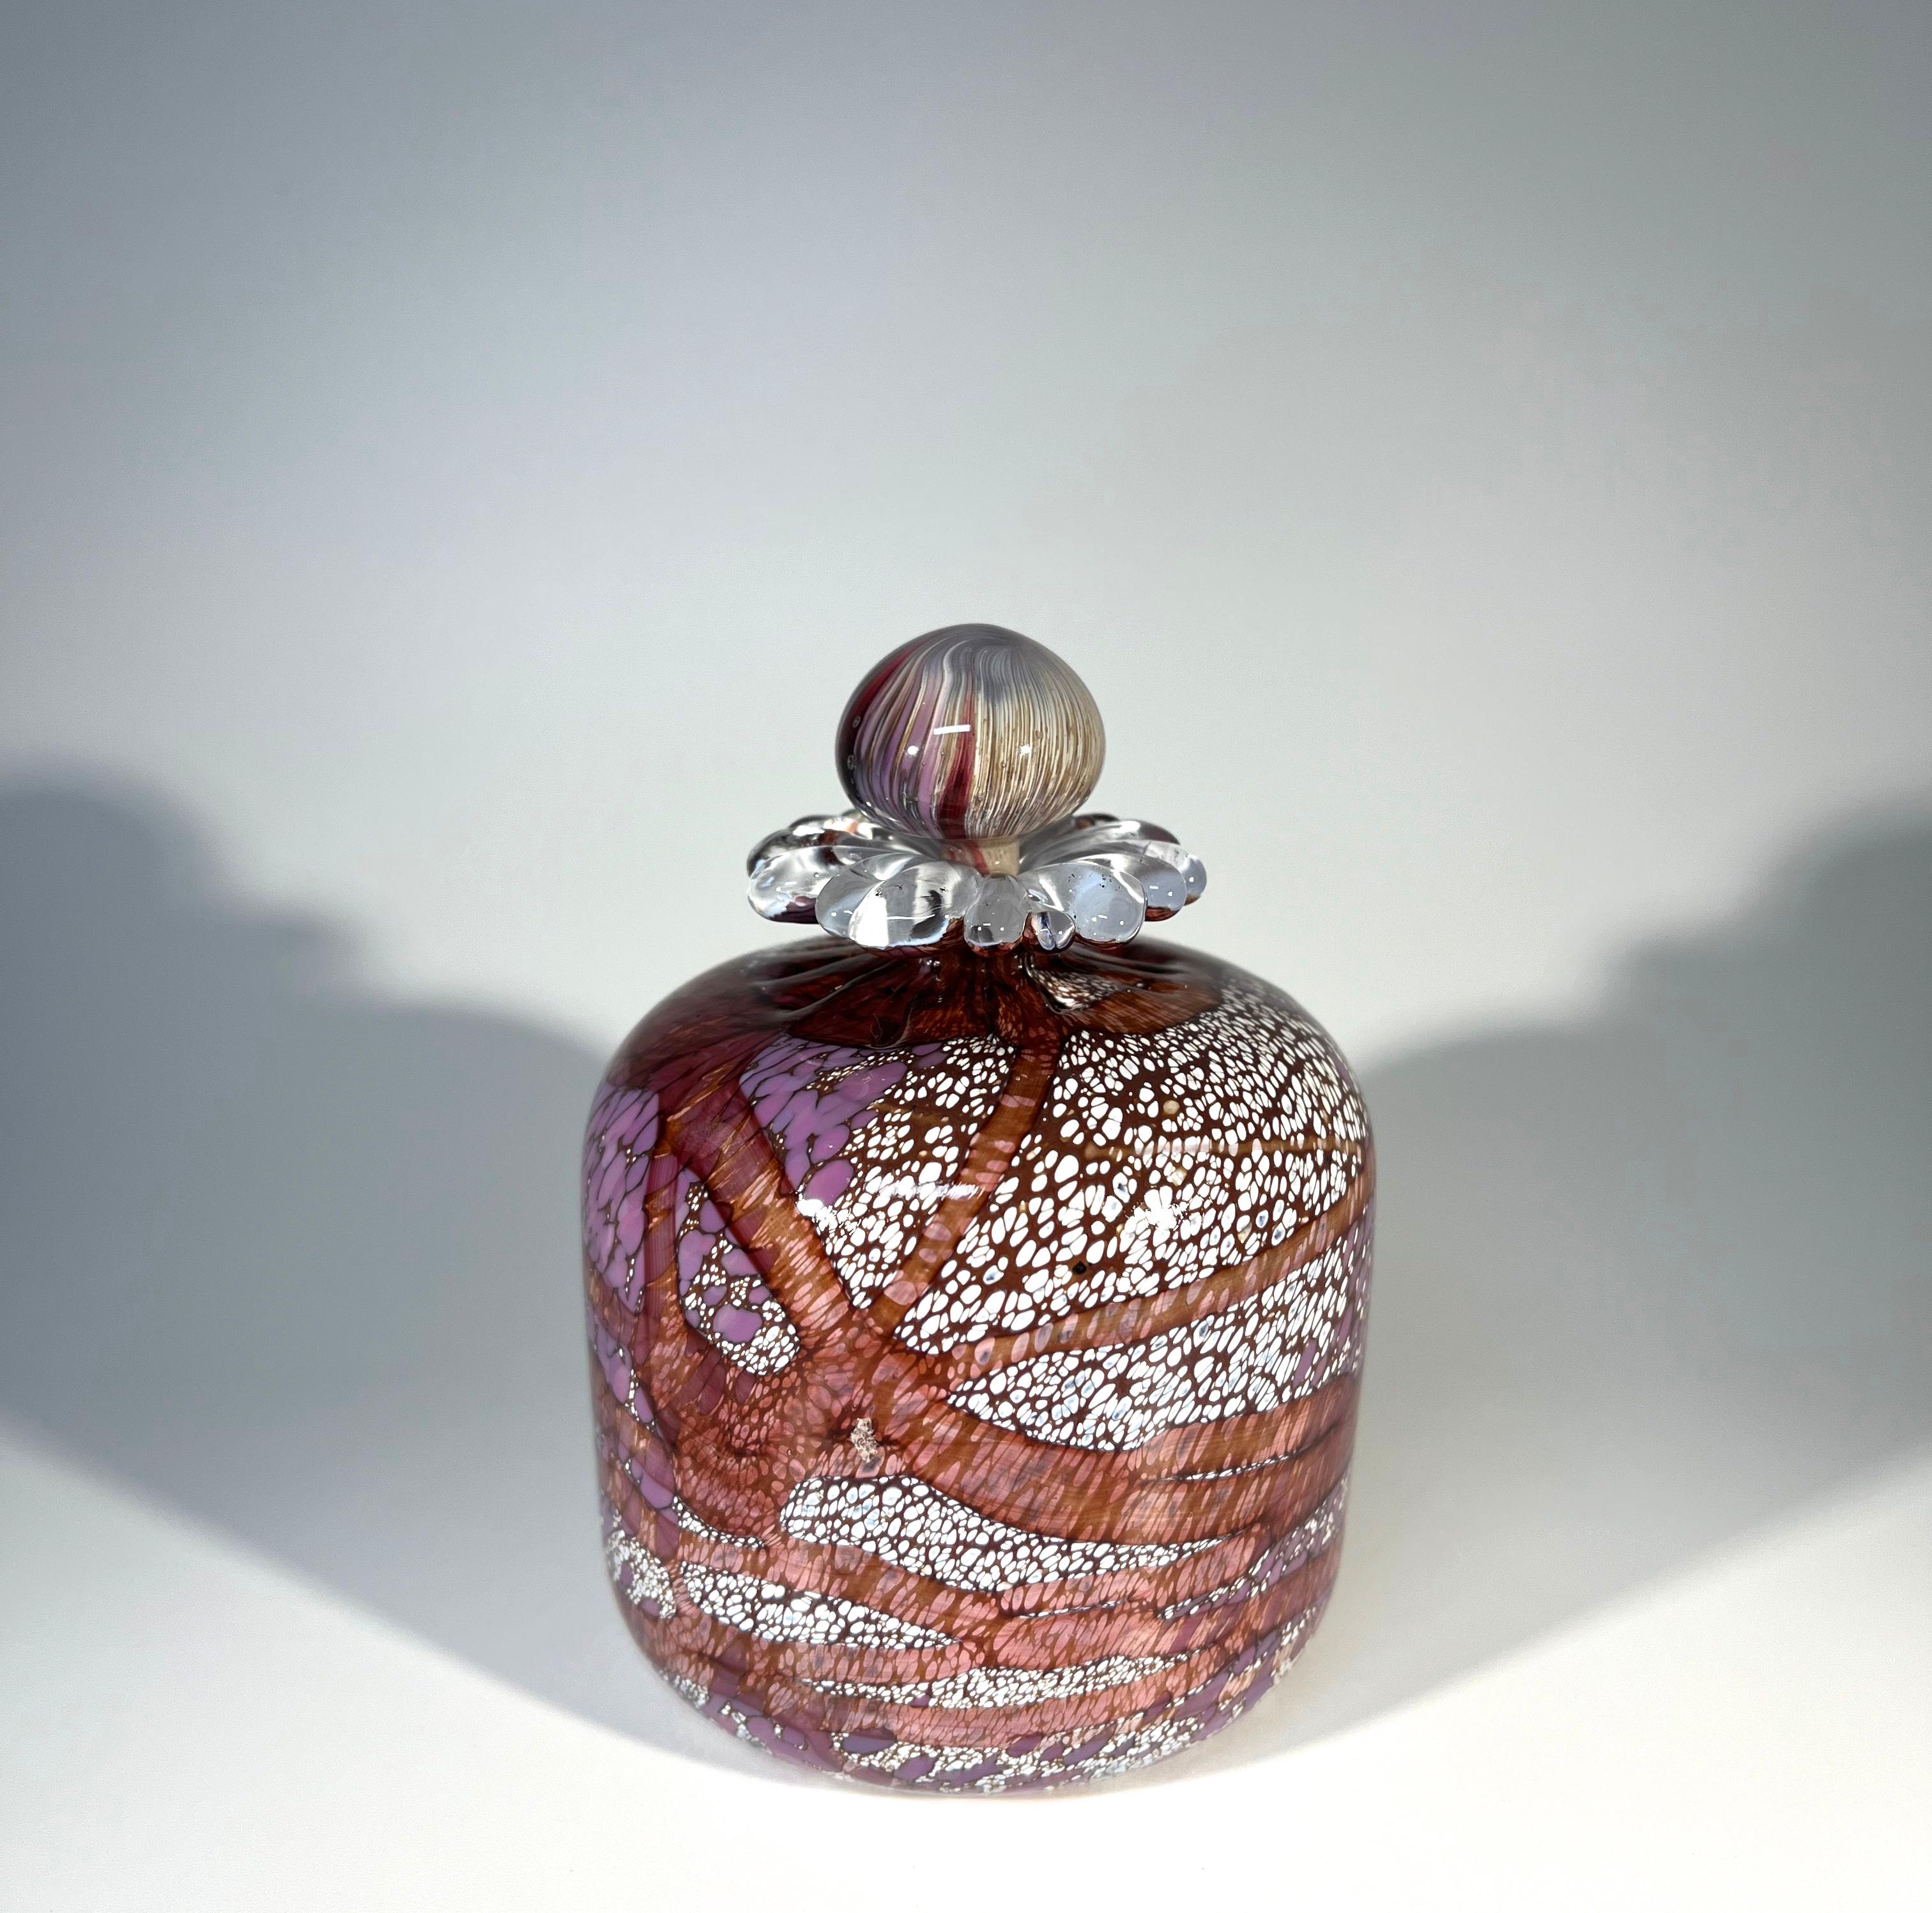 Begehrter Parfümflakon, mundgeblasen von den Guernsey Island Glass Studios auf den Kanalinseln
Kreiert mit einer Glaspalette aus duftendem Flieder, Pflaume und weißer Blüte mit Gänseblümchenkragen
Der Stöpsel ist ein Wirbel aus komplementären